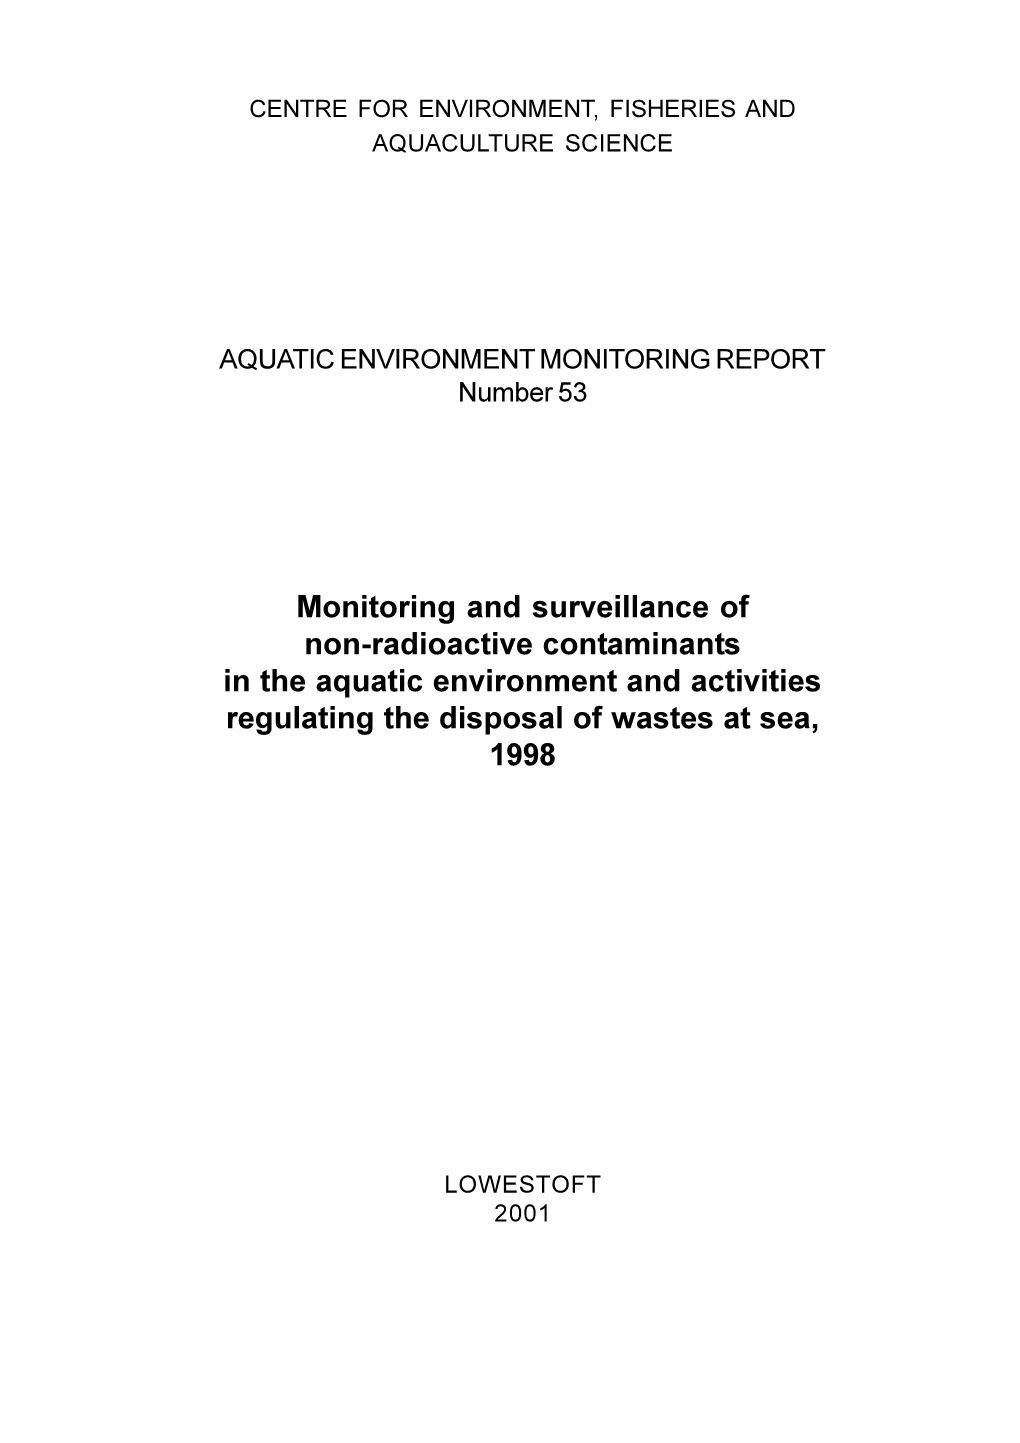 Aquatic Environment Monitoring Report No 53